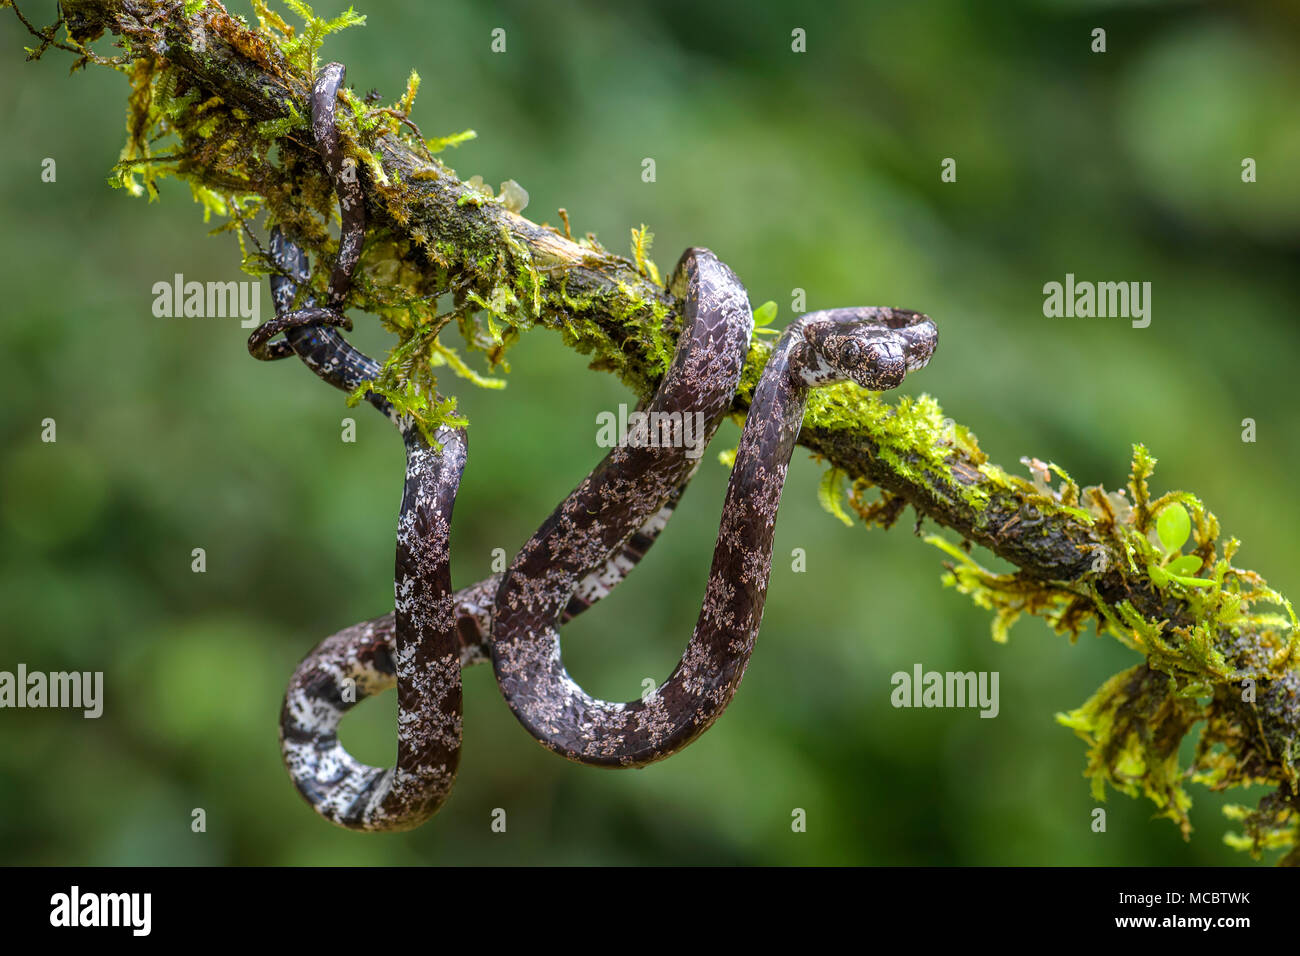 La serpiente - Sibon nebulatus nublado, la bella y pequeña serpiente venoumous no forestales de América Central, Costa Rica. Foto de stock